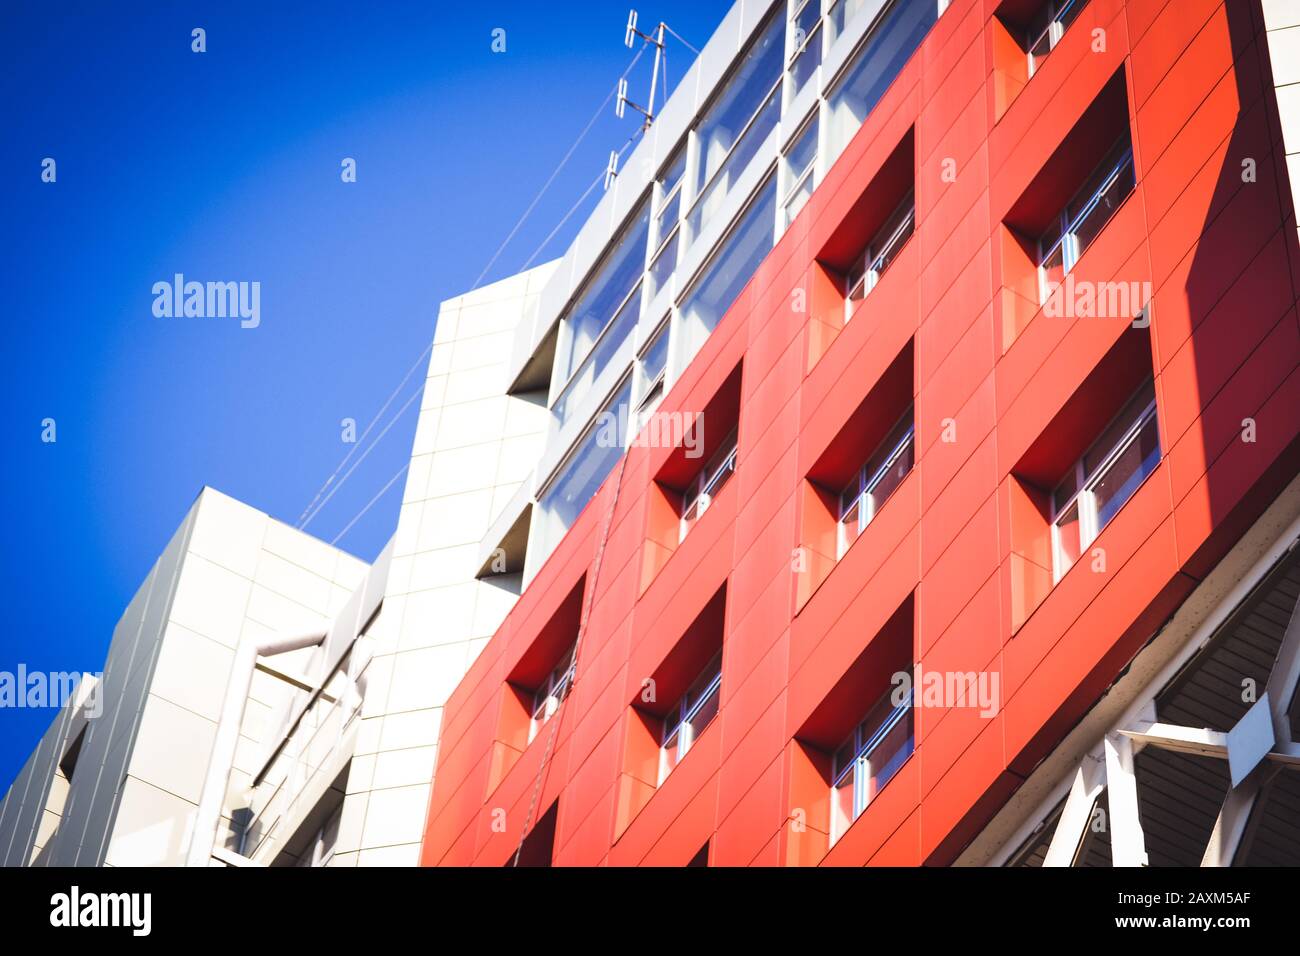 facciata, di fronte alla grande casa rossa e grigia in stile high-tech su una luminosa giornata di sole su sfondo blu cielo Foto Stock